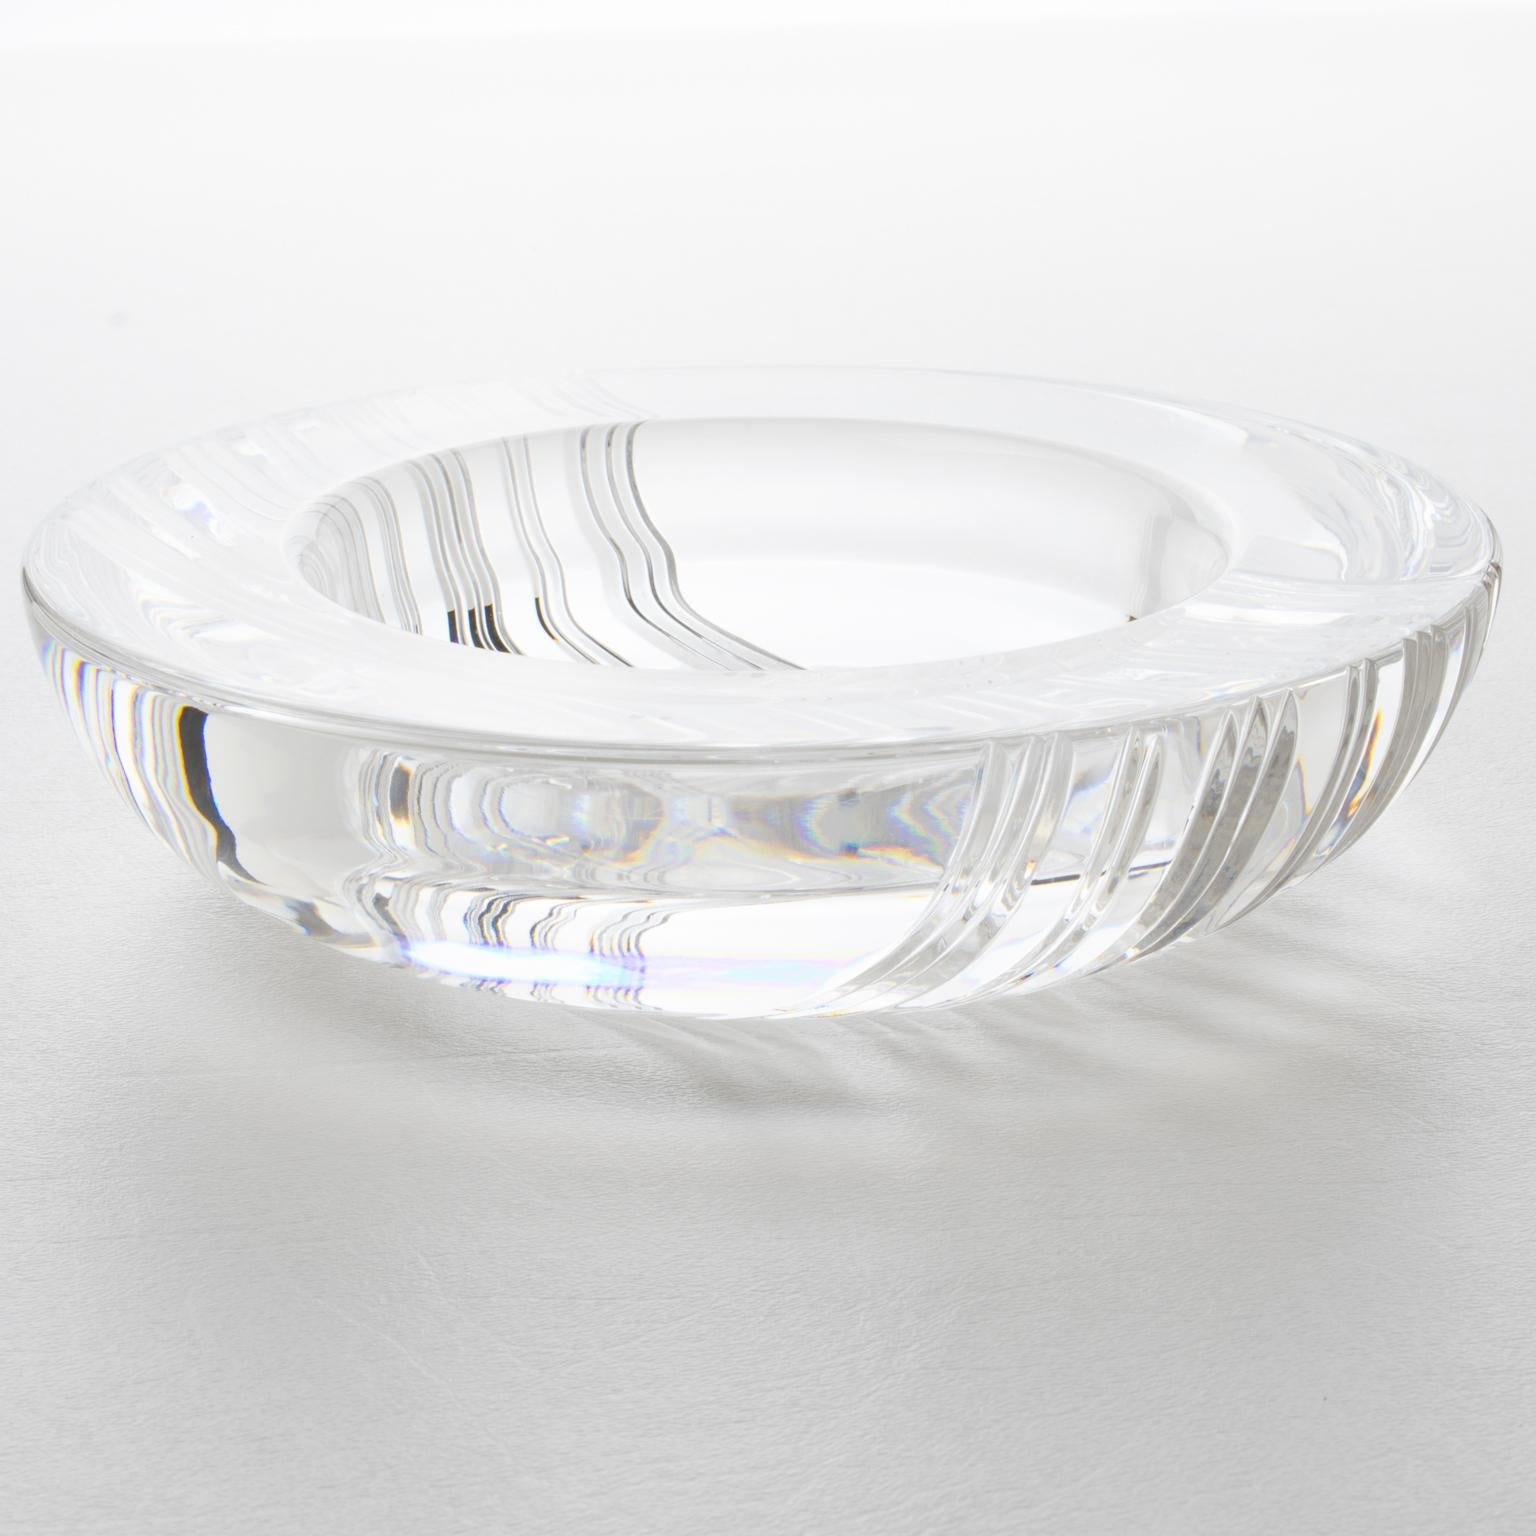 Cet exquis cendrier en cristal de Christian Dior, ou vide poche, est le complément idéal pour apporter une touche de luxe à n'importe quelle pièce. Le motif complexe et lourdement sculpté est stupéfiant, avec des rayures alternées autour du bol. Il